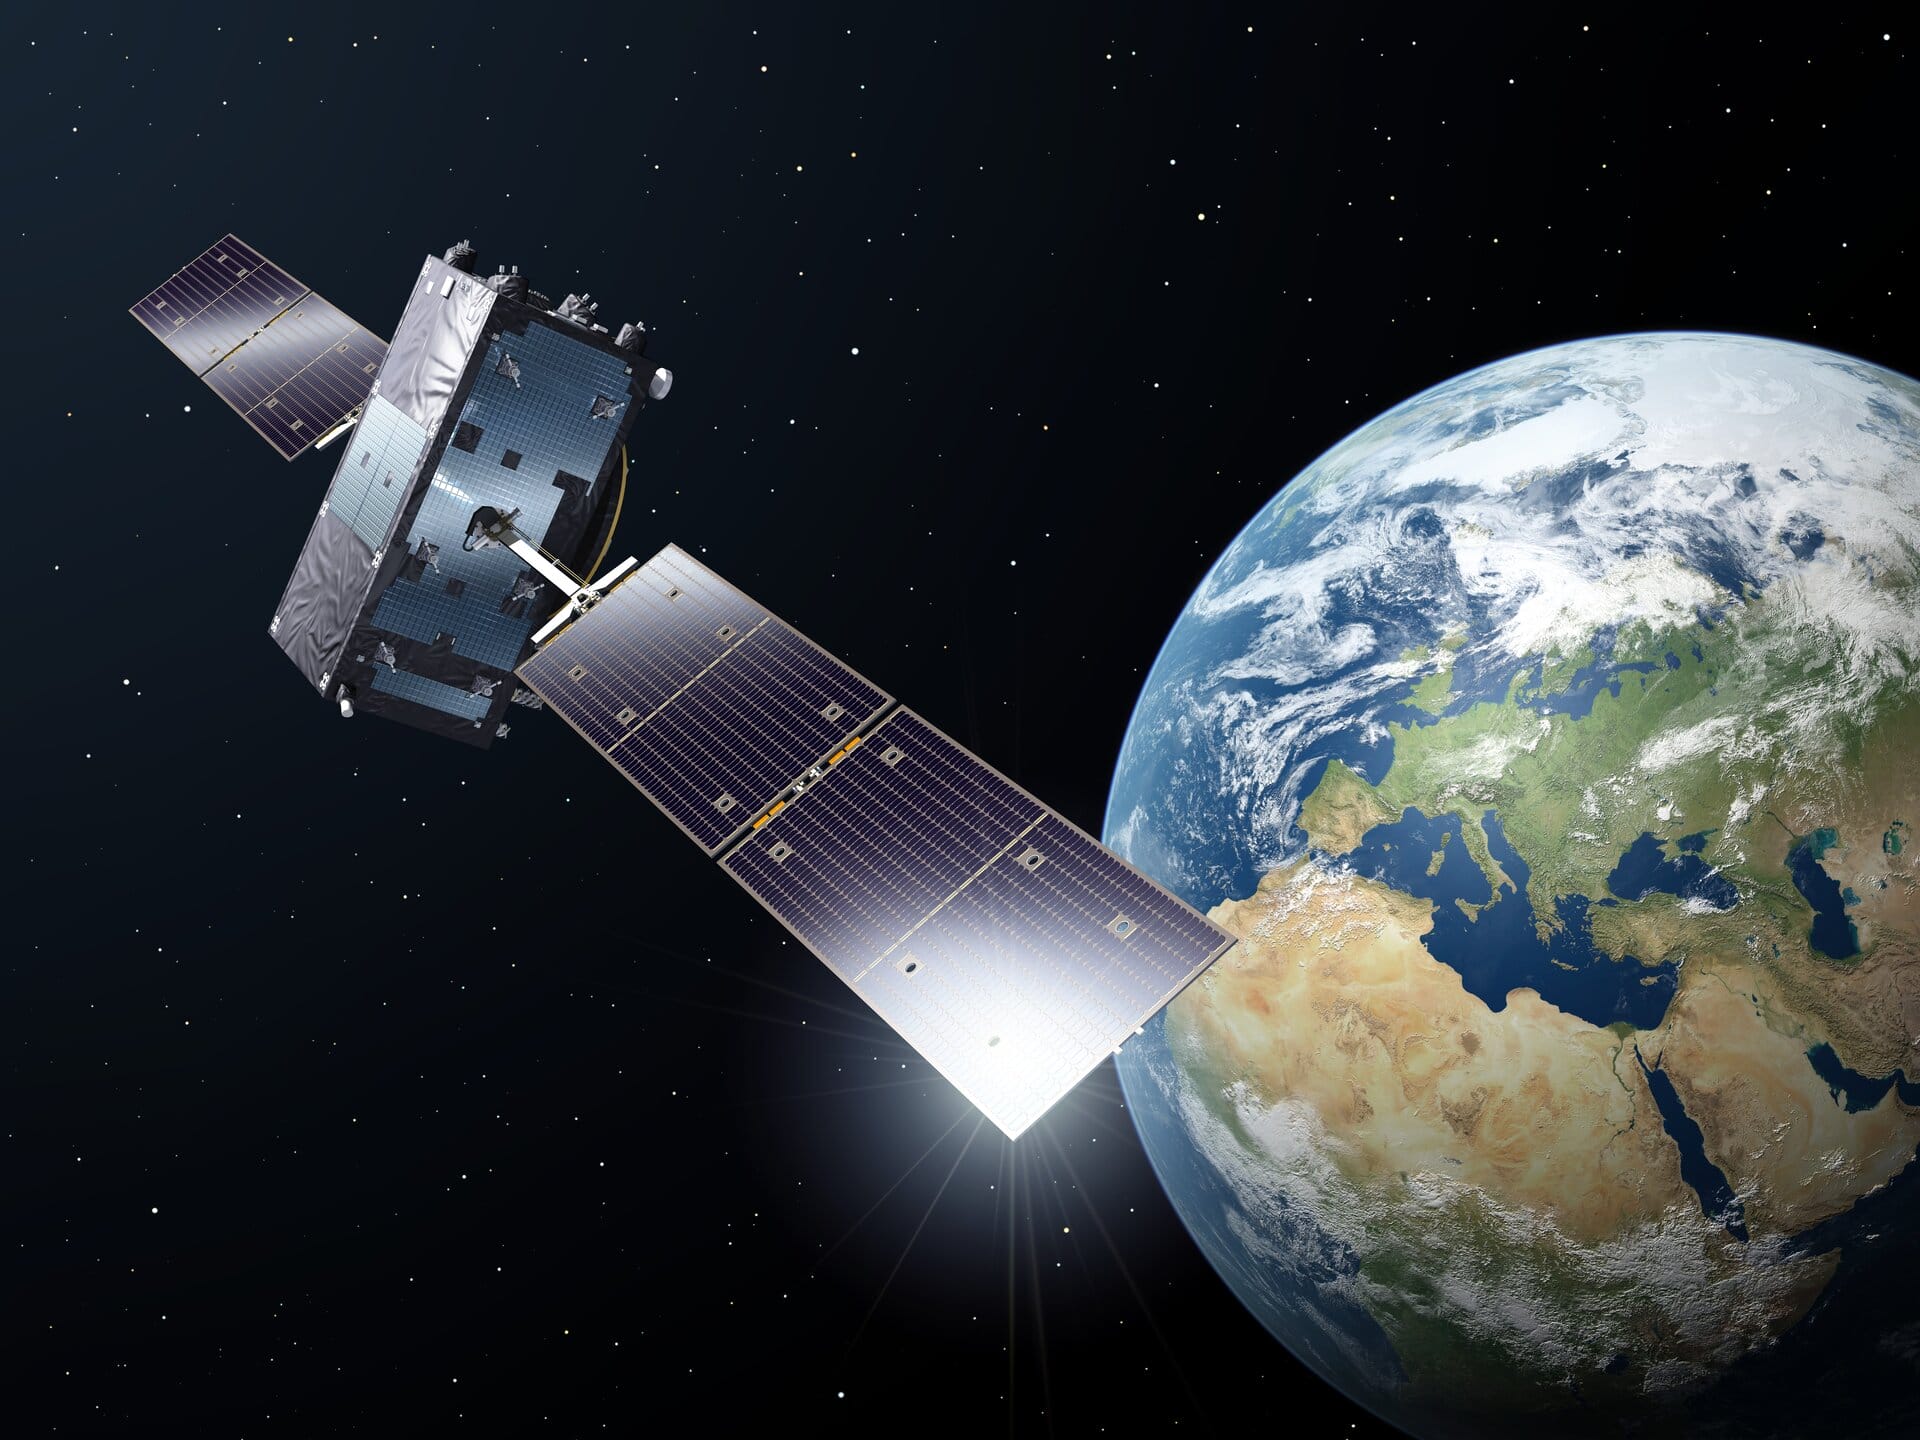 Galileo_satellite_in_orbit_pillars